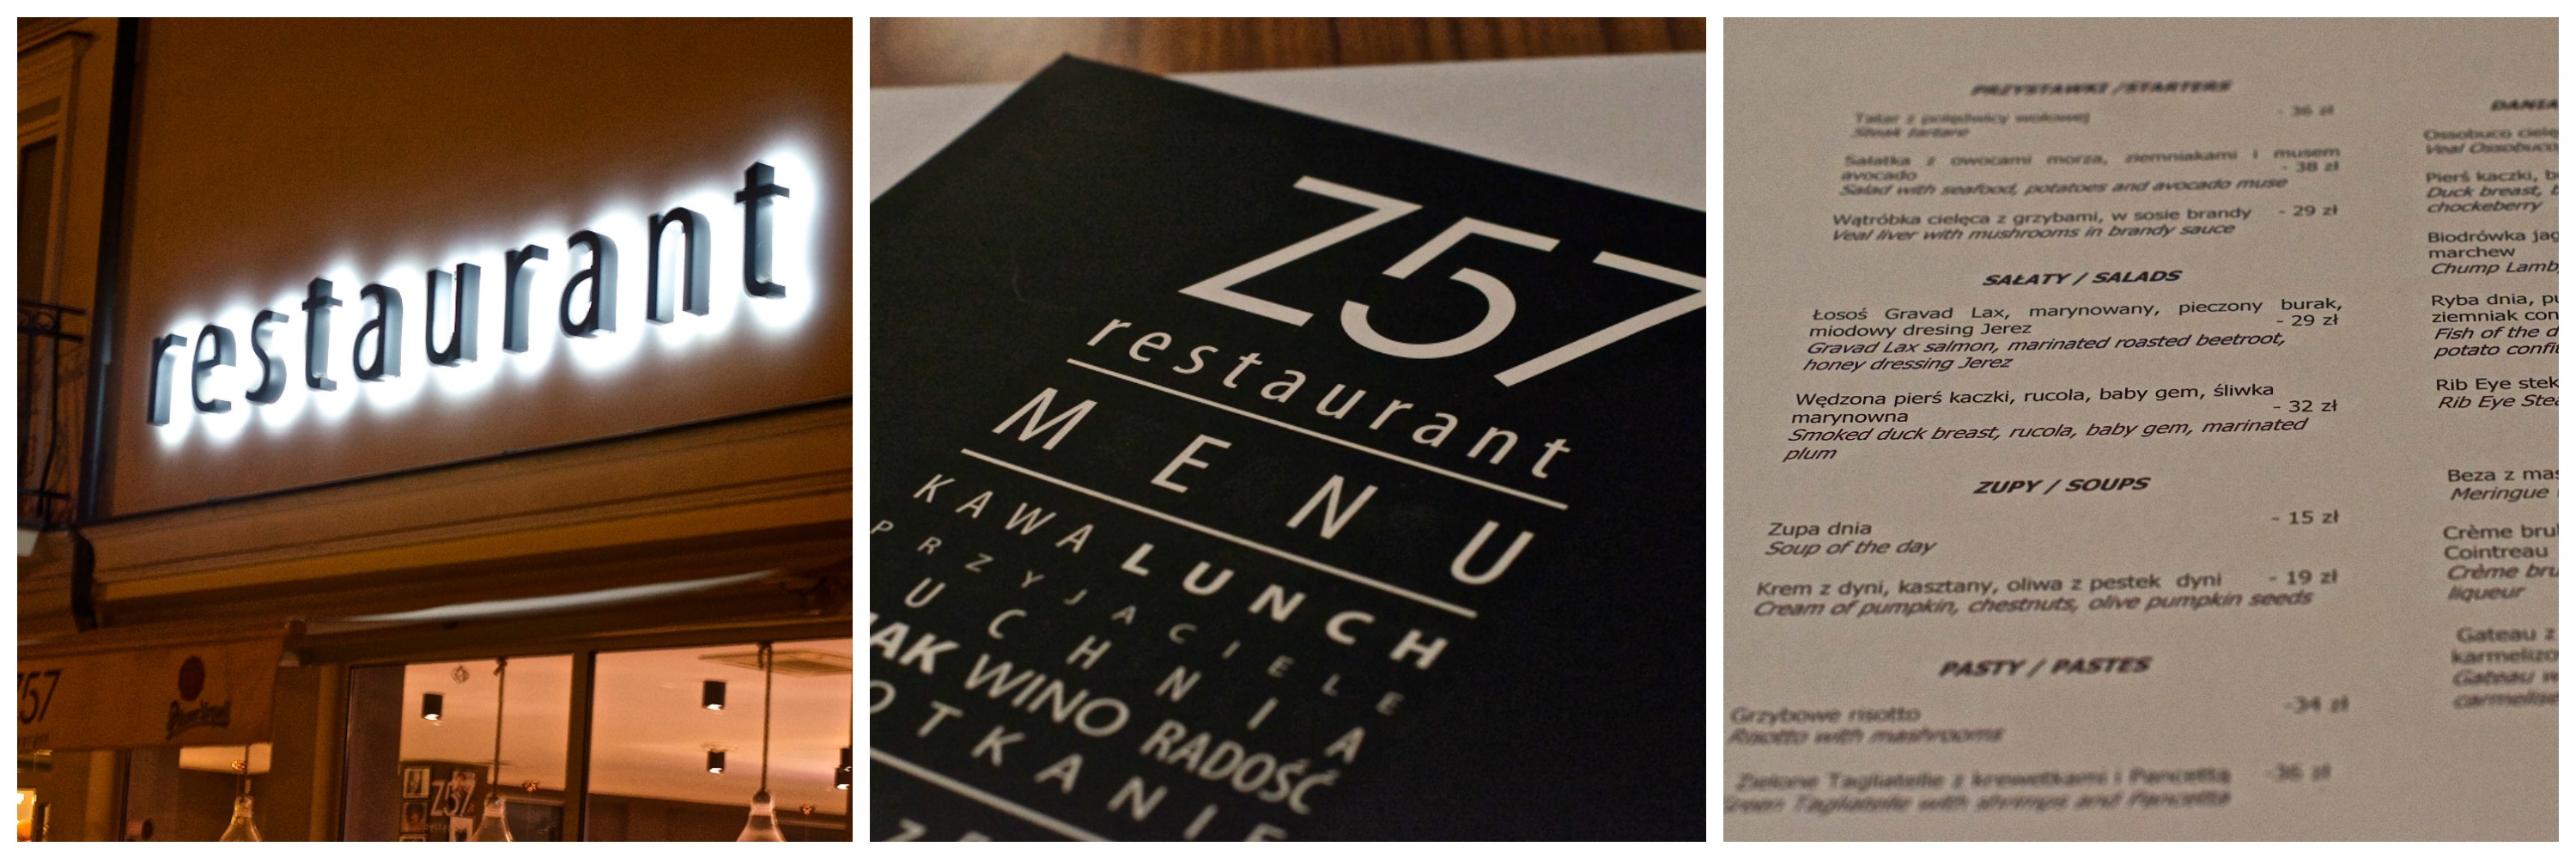 Restauracja Z57